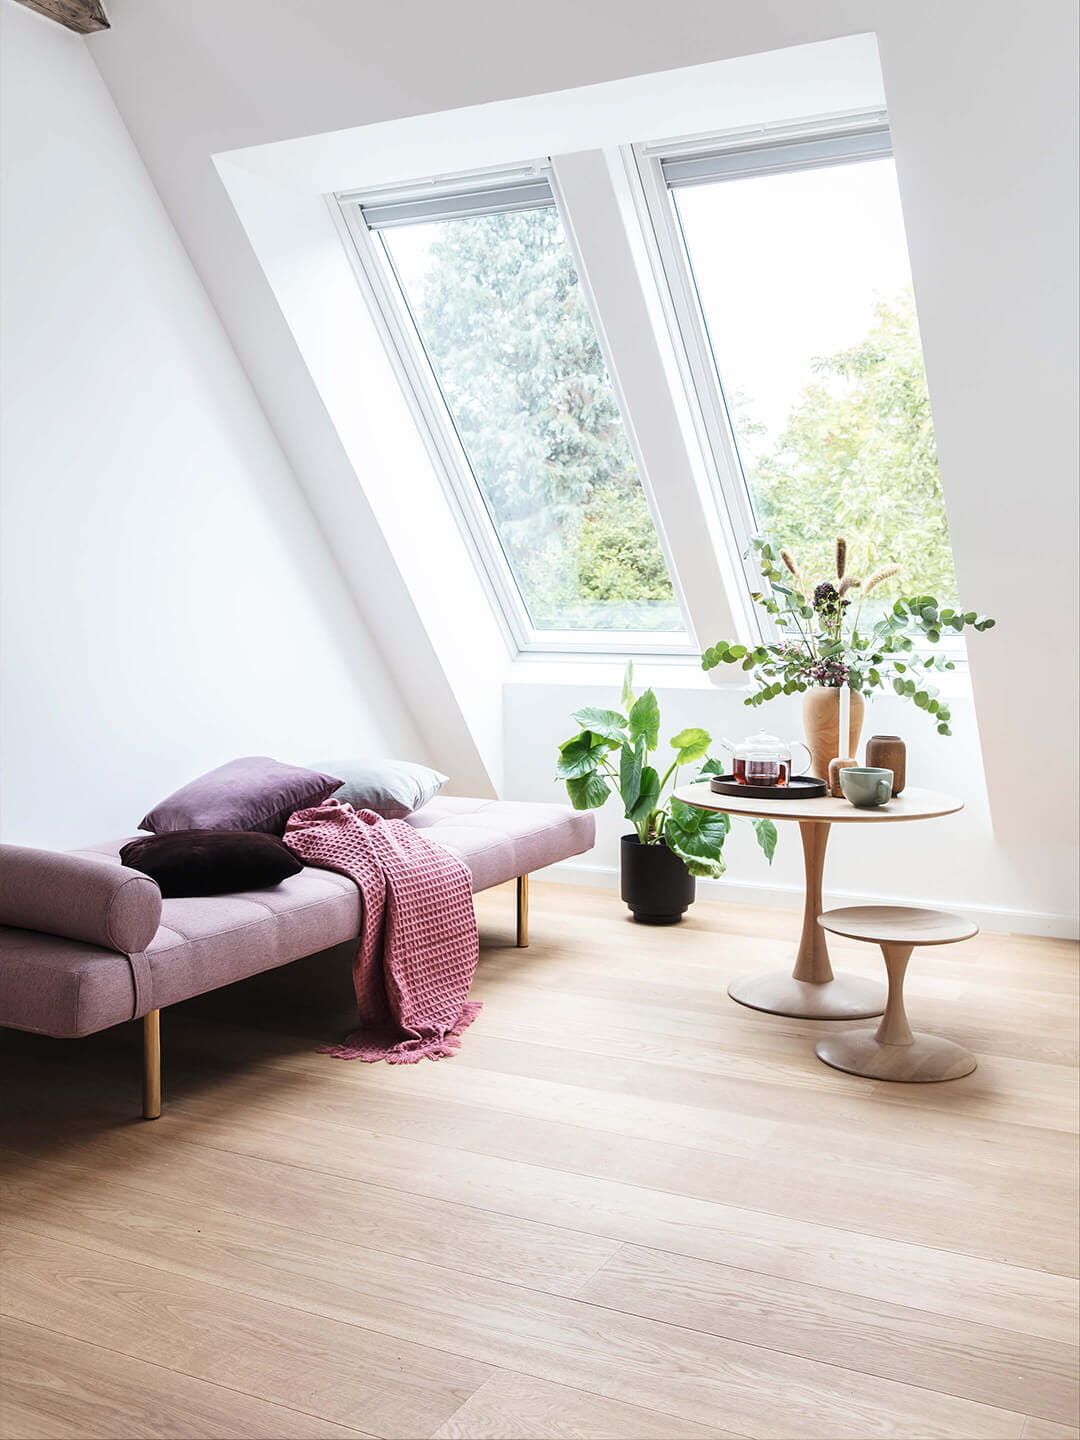 Wohnzimmer im Dachboden mit natürlichem Licht durch VELUX Dachflächenfenster, lila Sofa und Pflanzen.